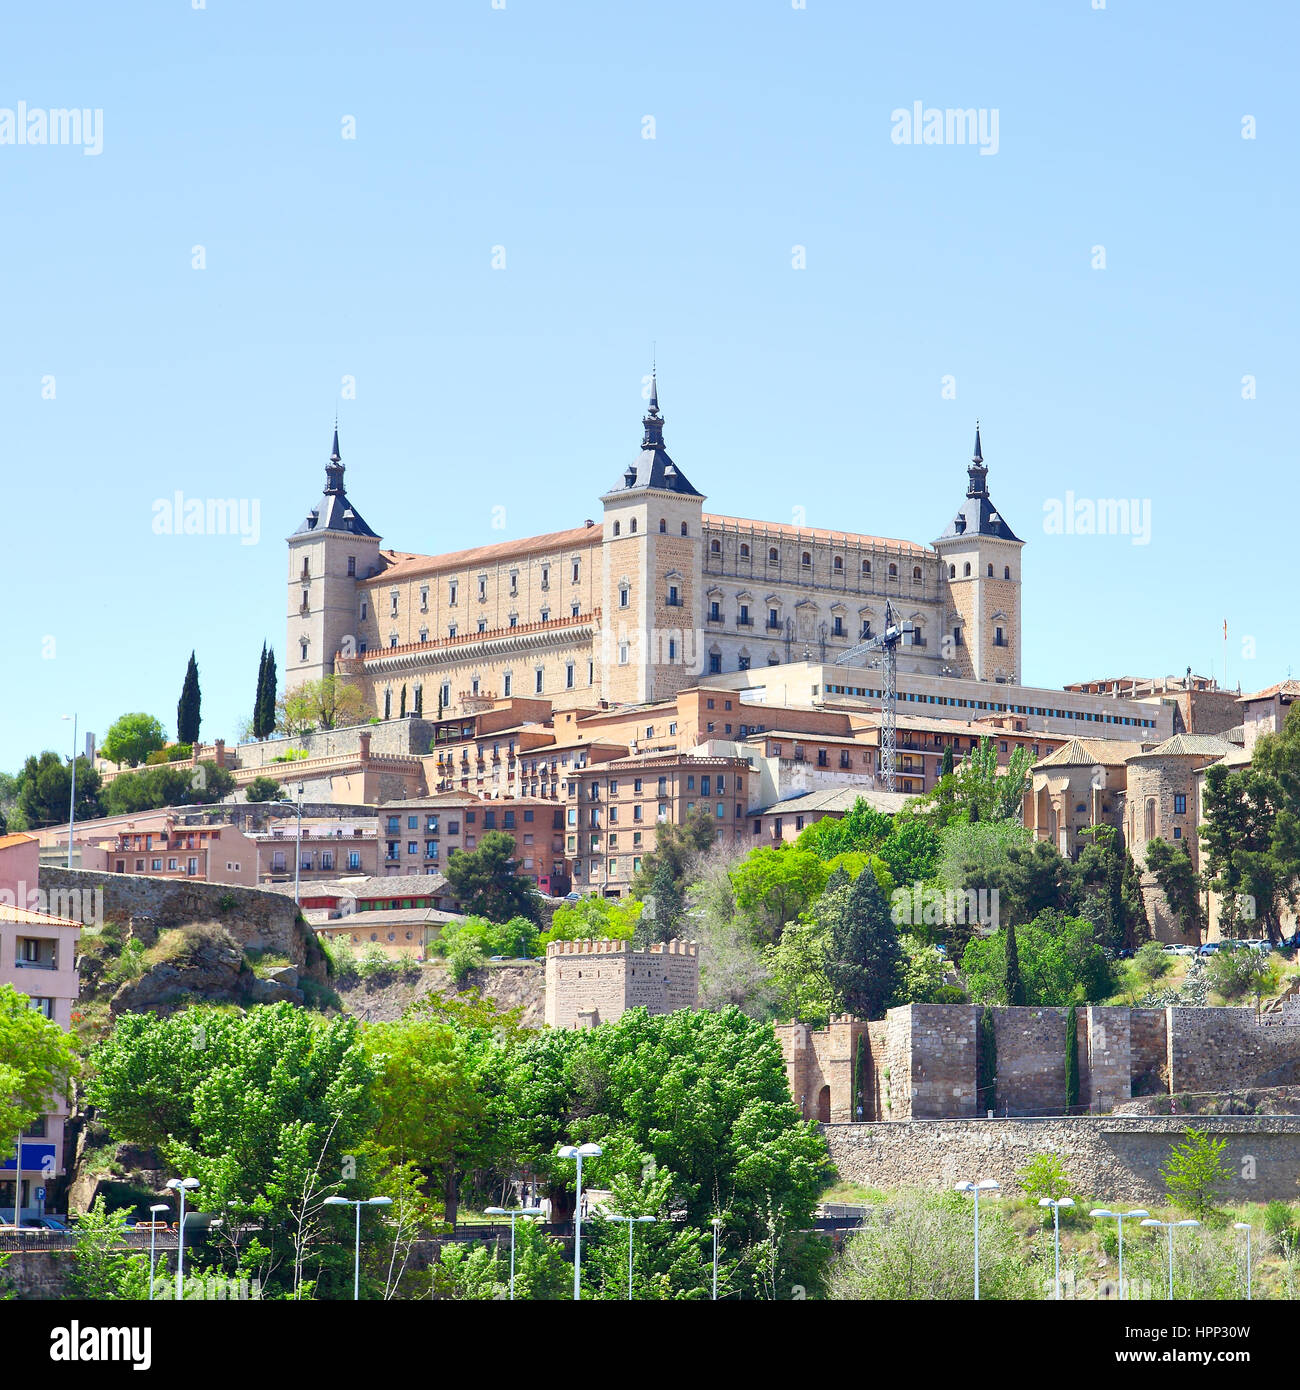 Alcazar fortress in Toledo, Spain Stock Photo